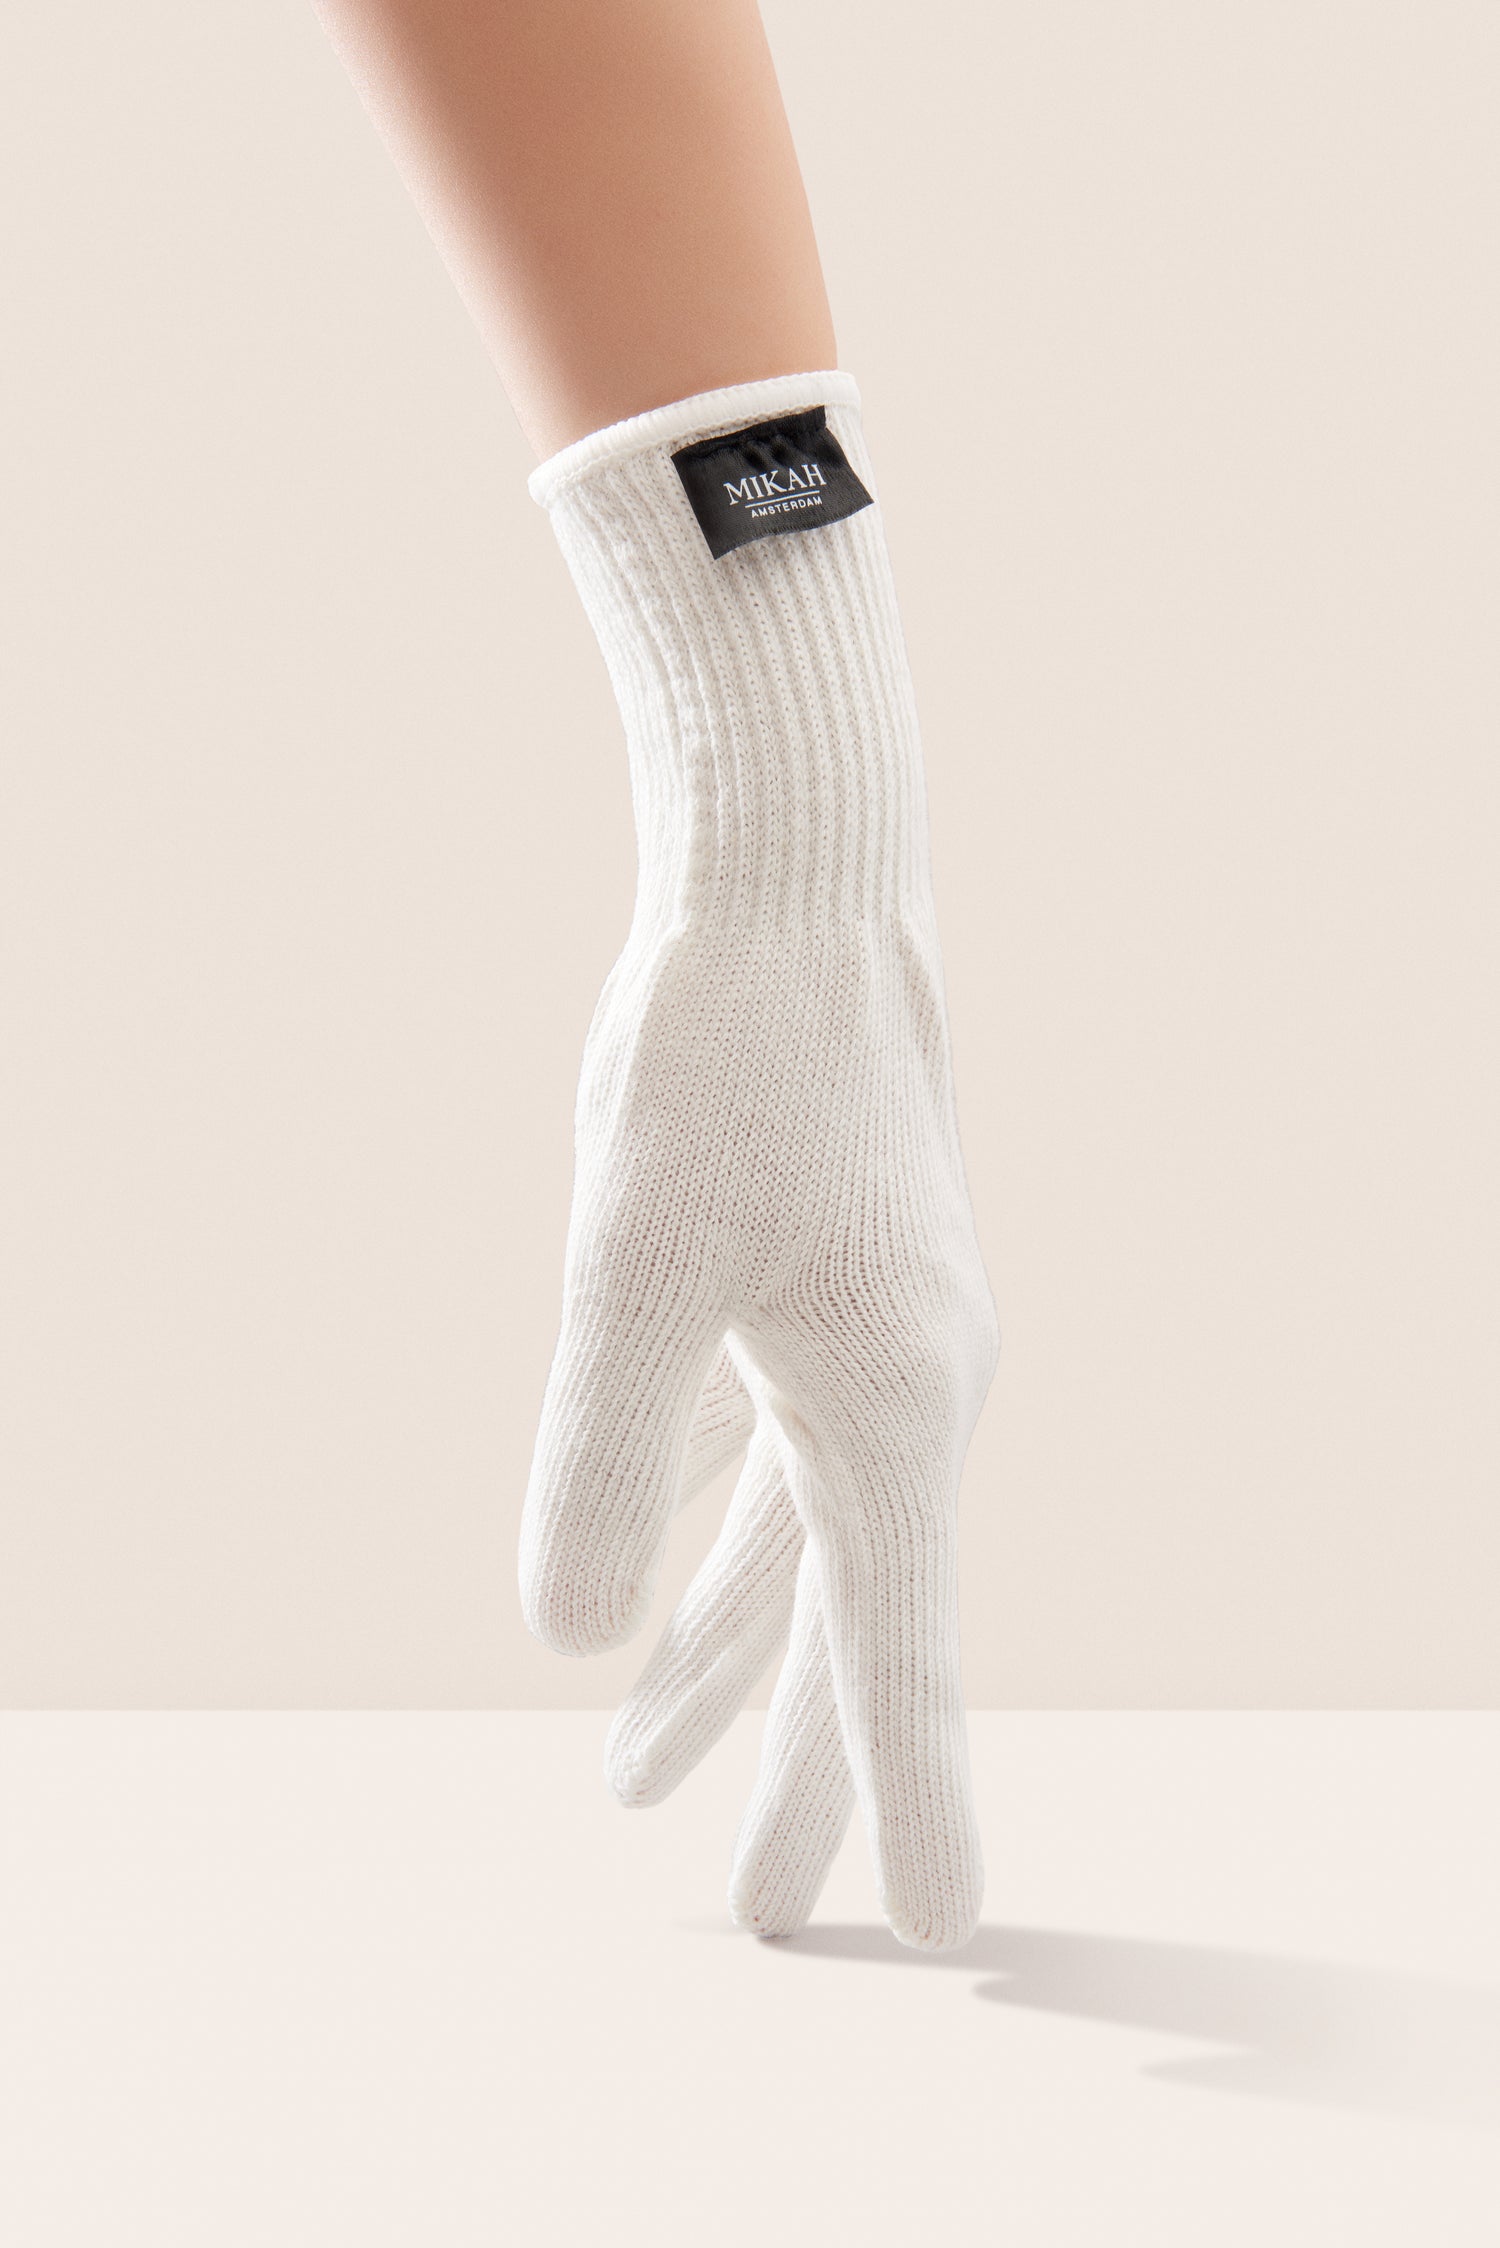 MIKAH - Heat Protective Glove